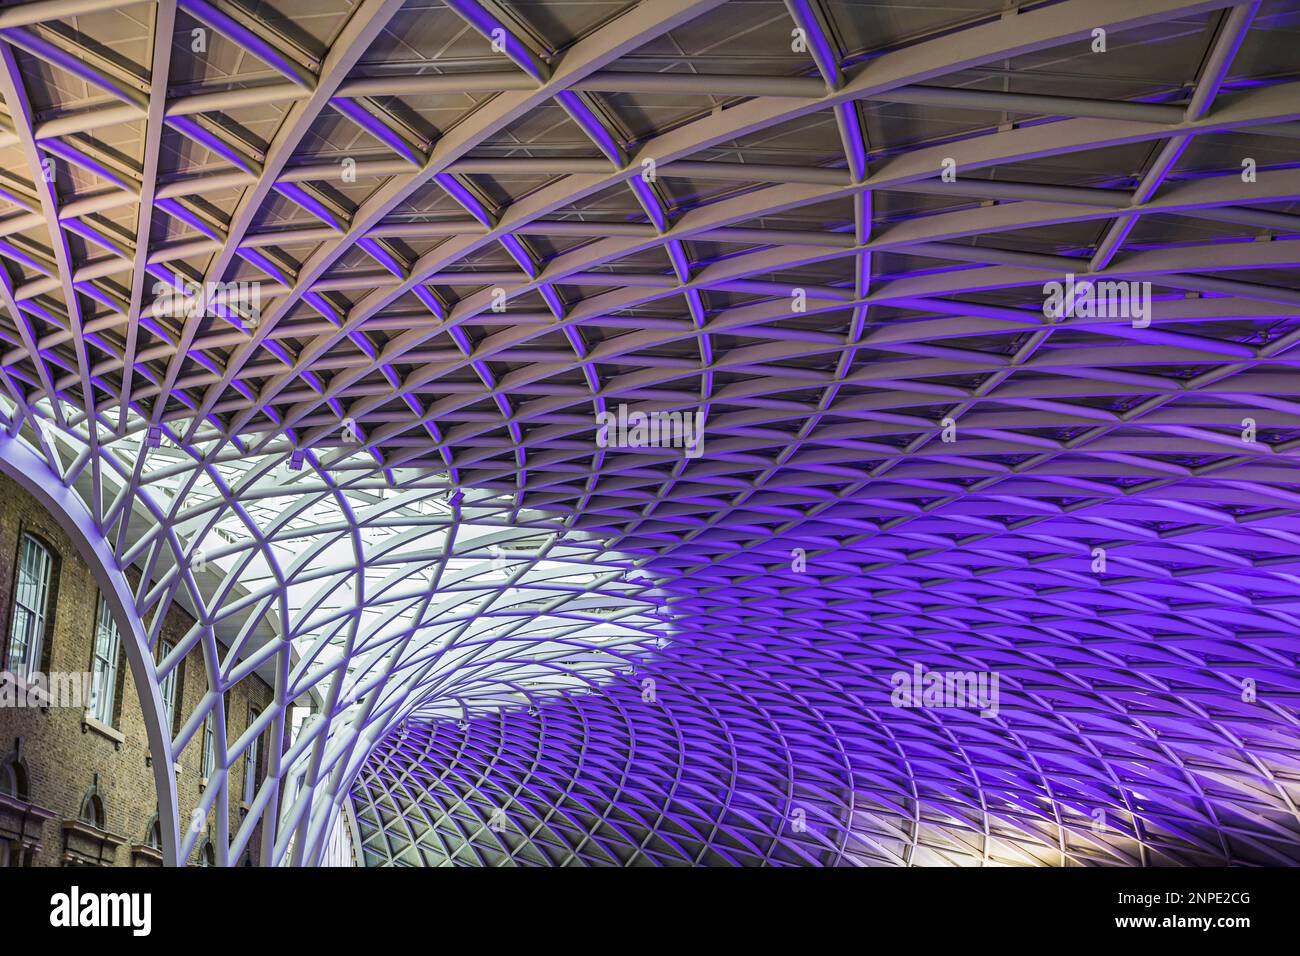 Le plafond abstrait Kings Cross s'illumine dans un éclairage violet à Londres. Banque D'Images